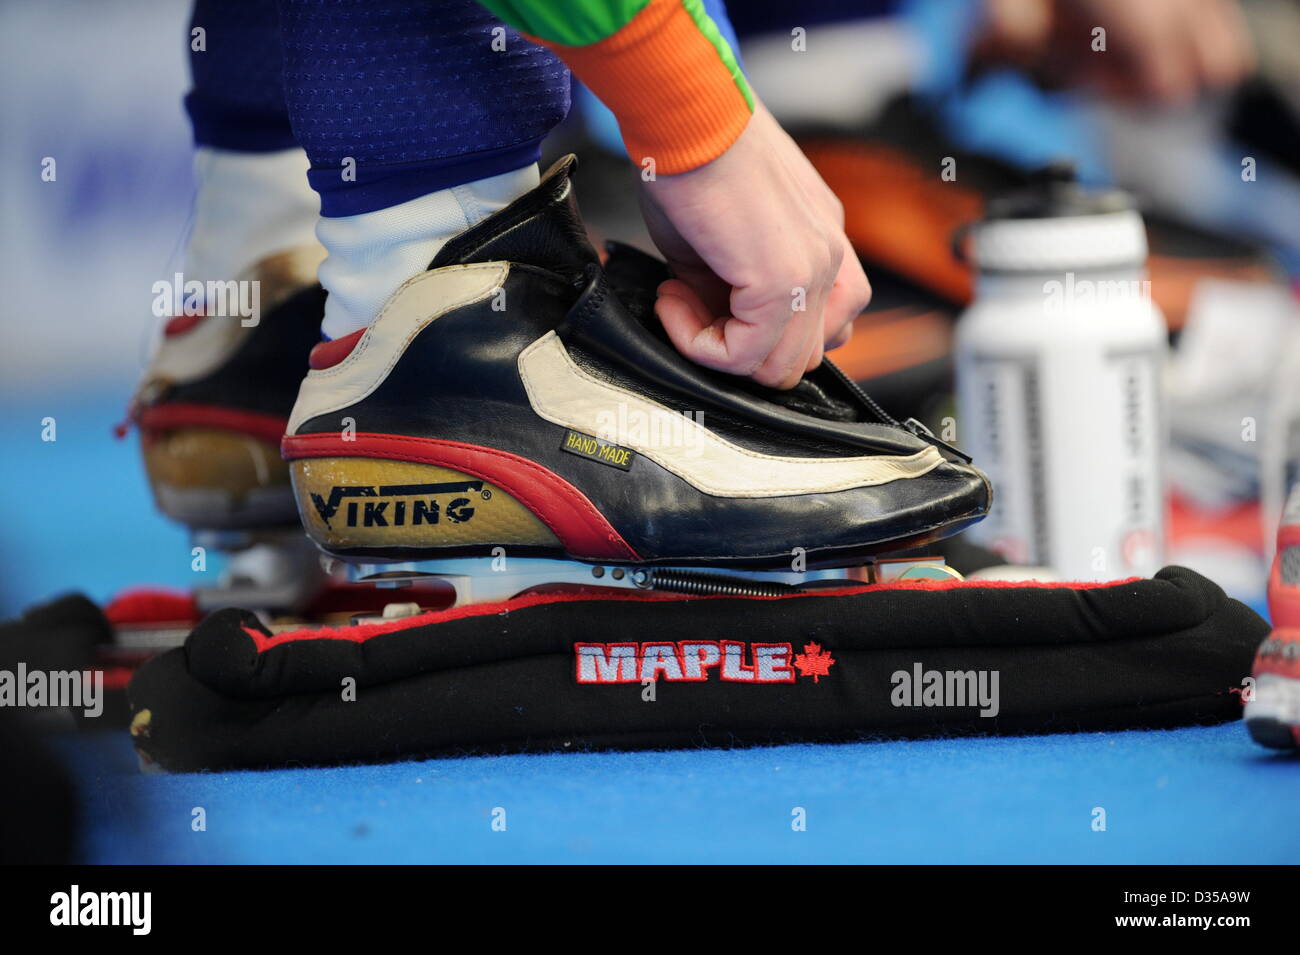 Ein Athlet Schnürsenkel ihre Schlittschuhe während der Eisschnelllauf-WM im  Max Aicher Arena in Inzell, Deutschland, 9. Februar 2013. Foto: TOBIAS HASE  Stockfotografie - Alamy